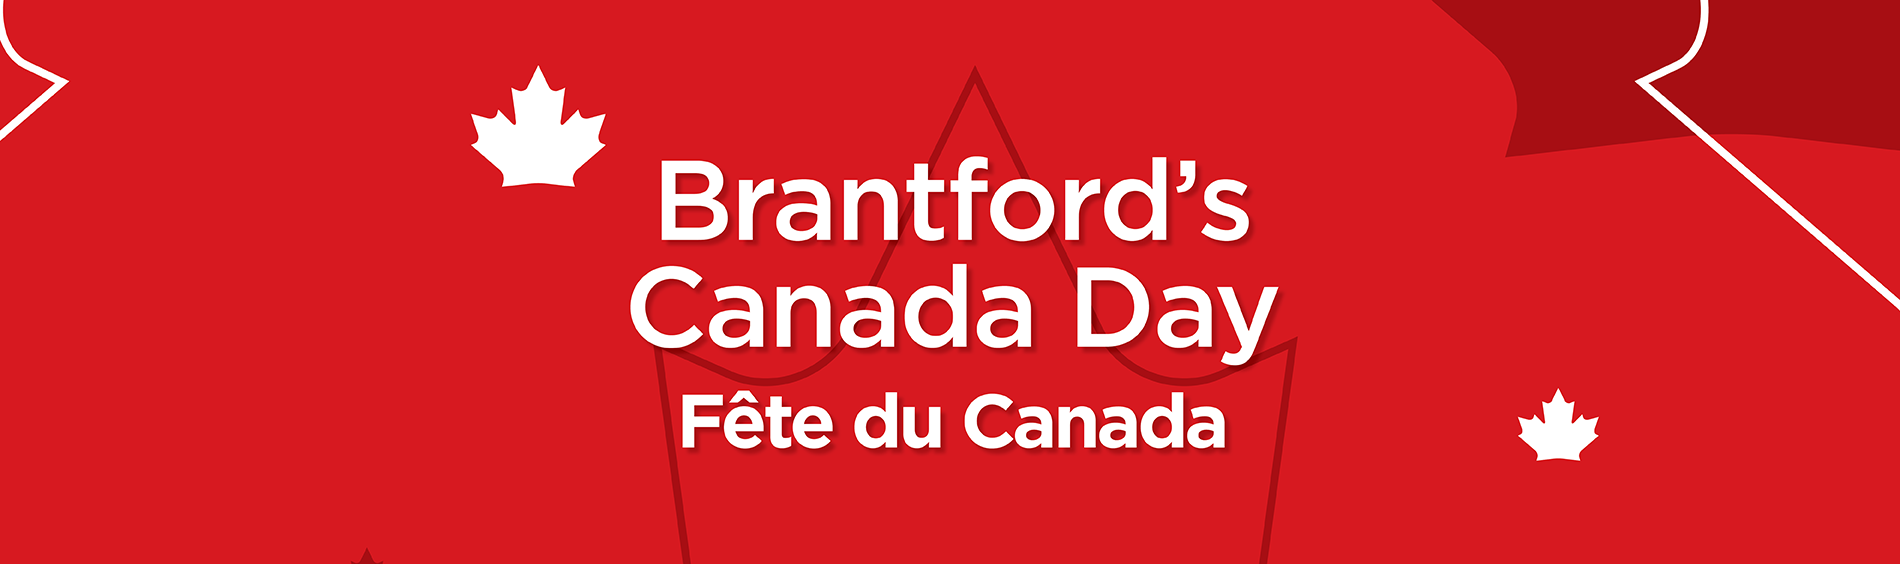 Brantford’s Canada Day Banner